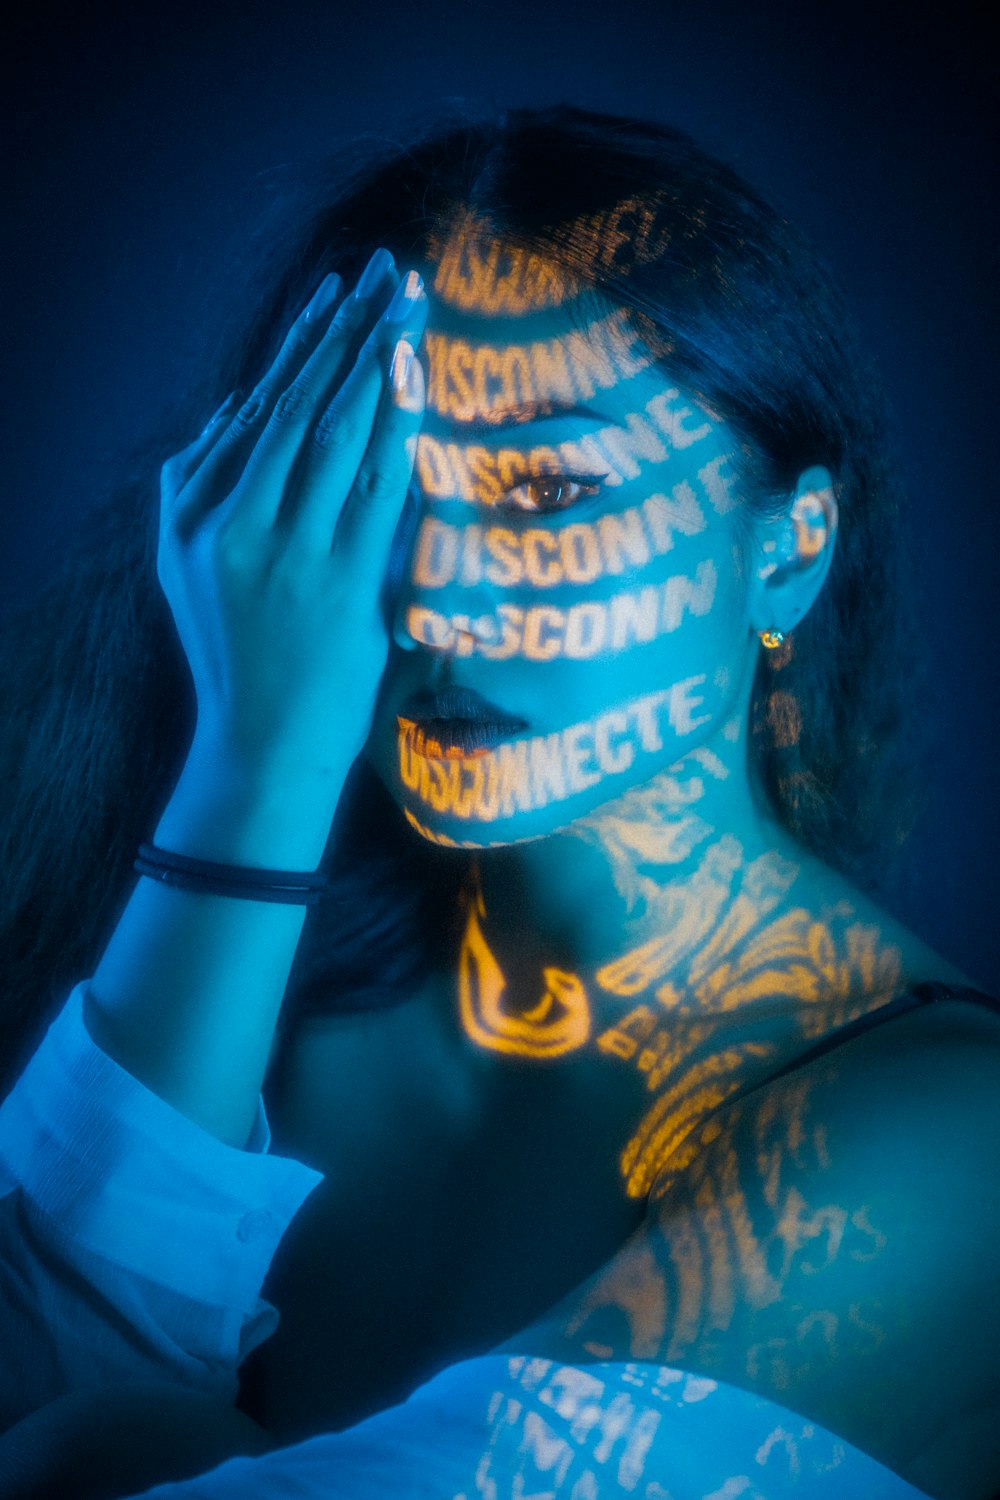 Femme en débardeur noir avec tatouage bleu et jaune sur sa main gauche